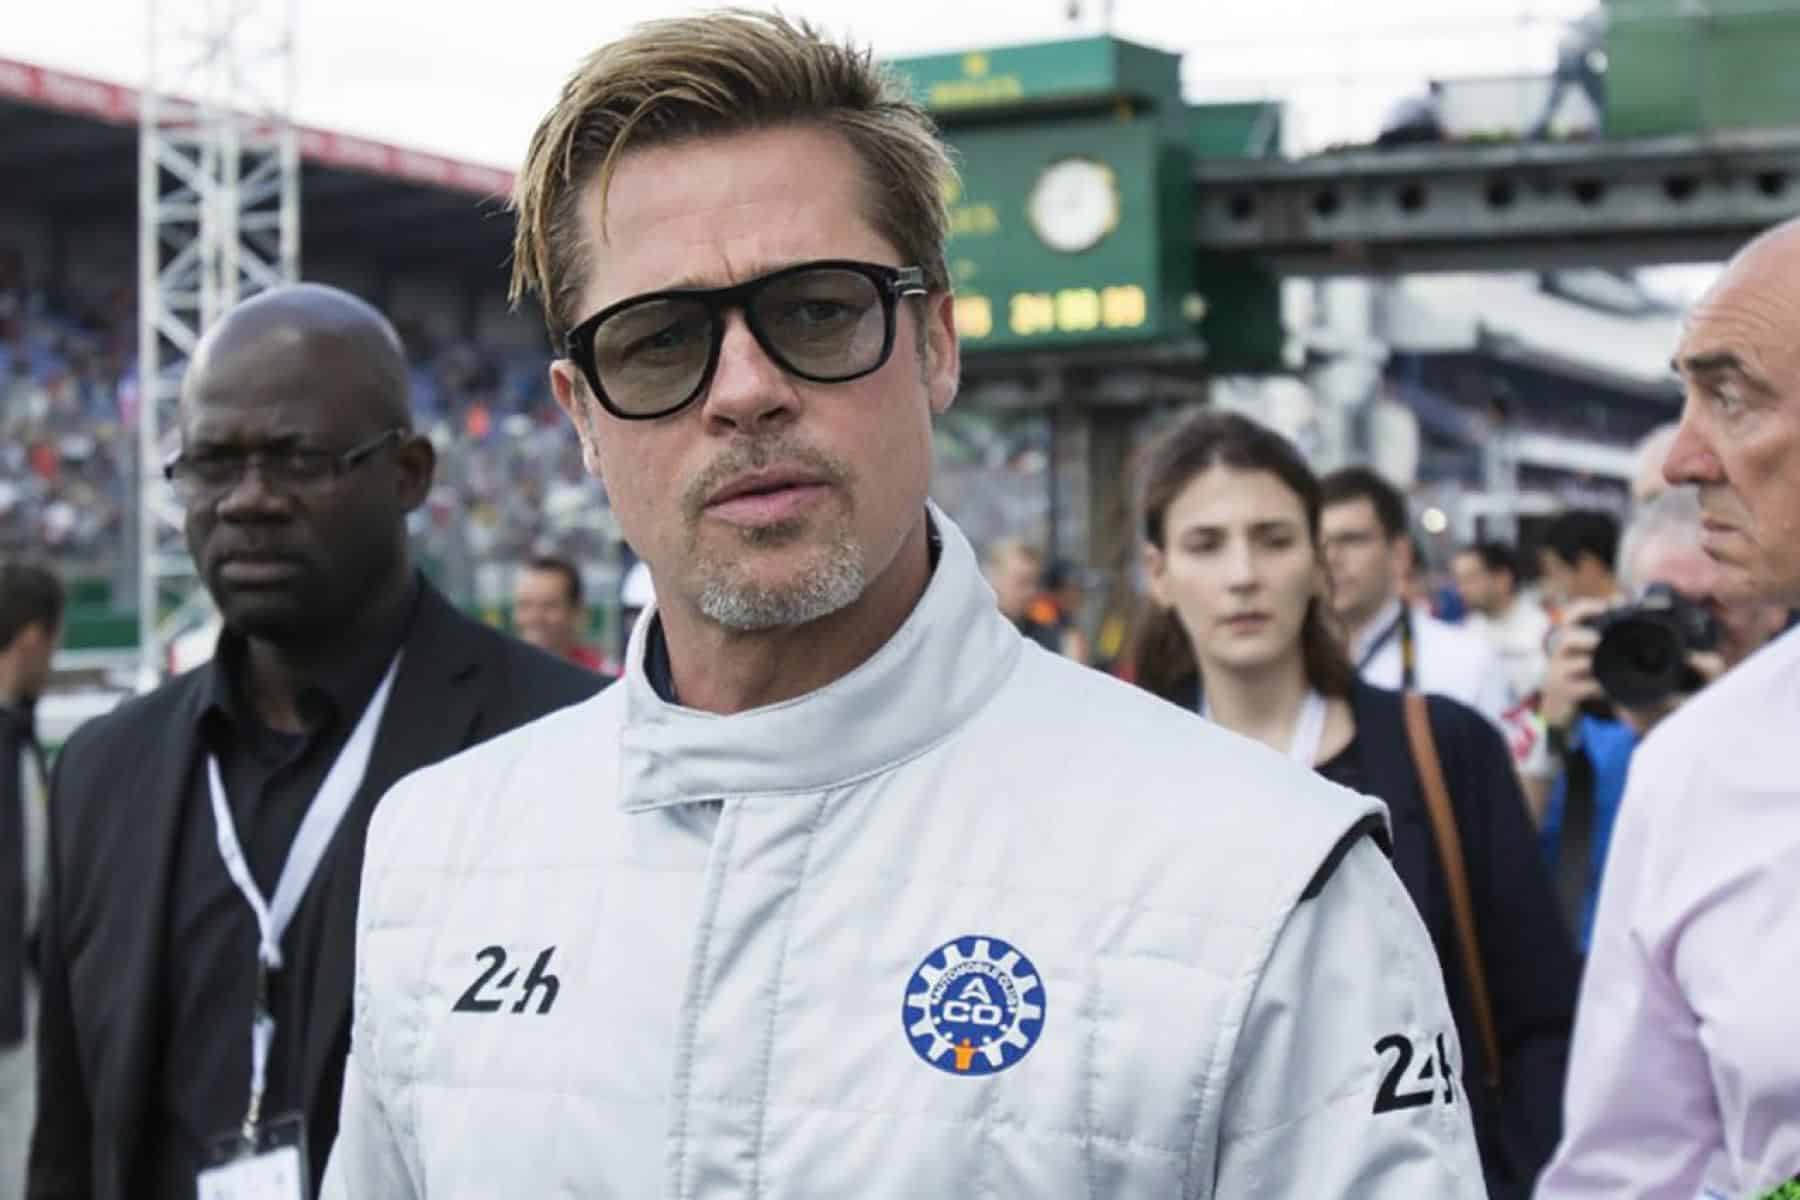 - Filme Brad Pitt F1: Tudo o que sabemos até agora (ATUALIZADO)